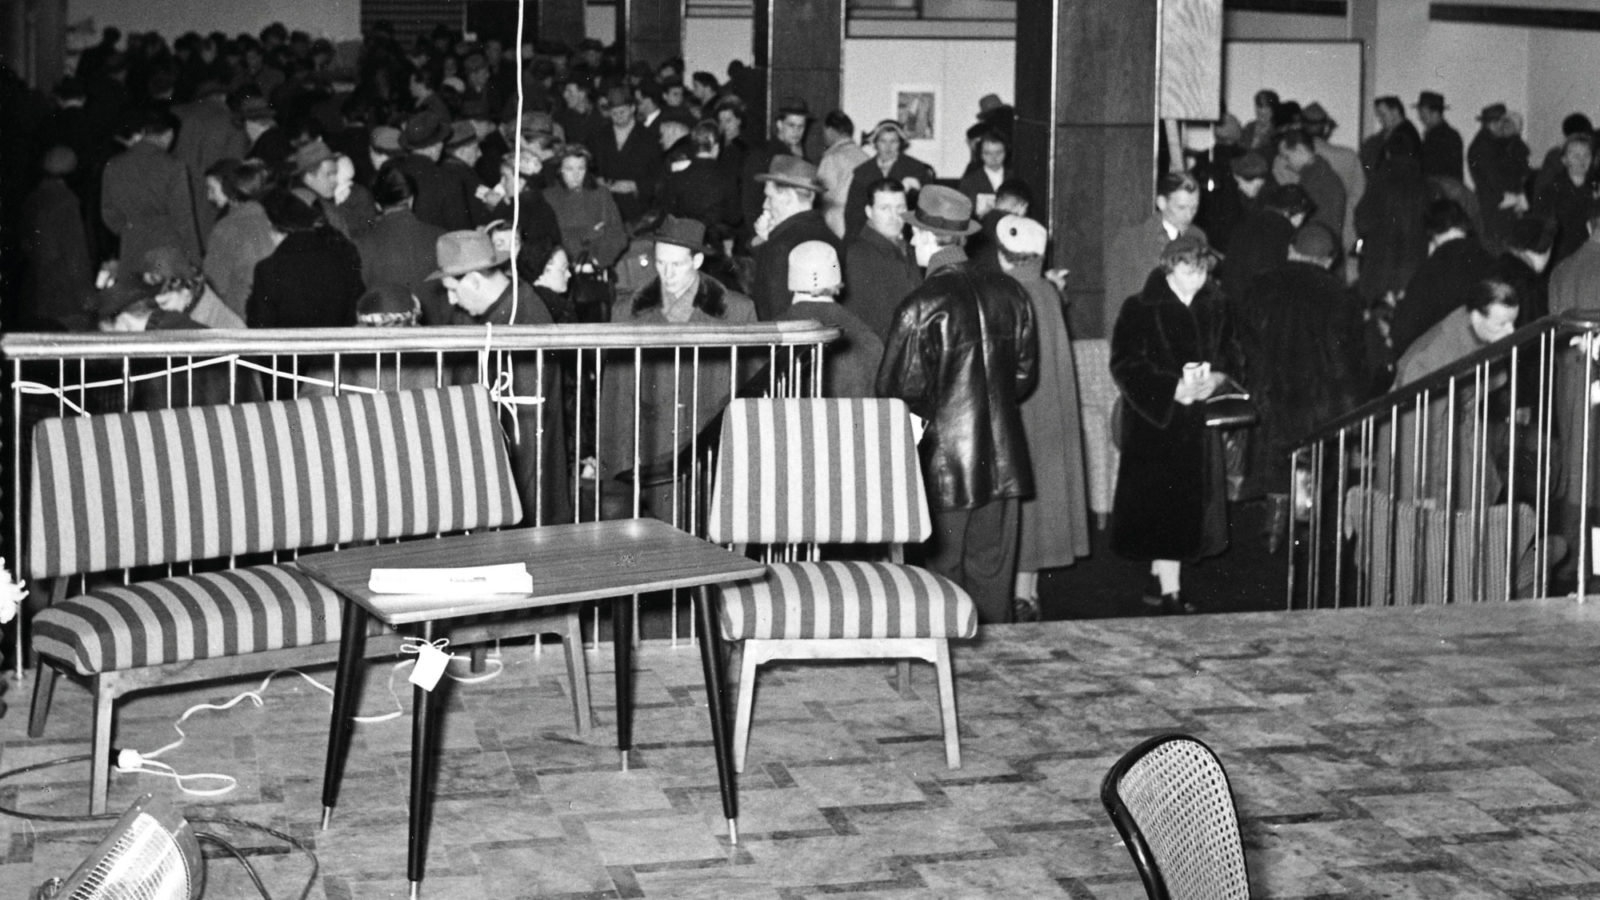 Randig soffa, träbord i 1950-talsstil uppställt i mässlokal. I bakgrunden syns myller av folk.